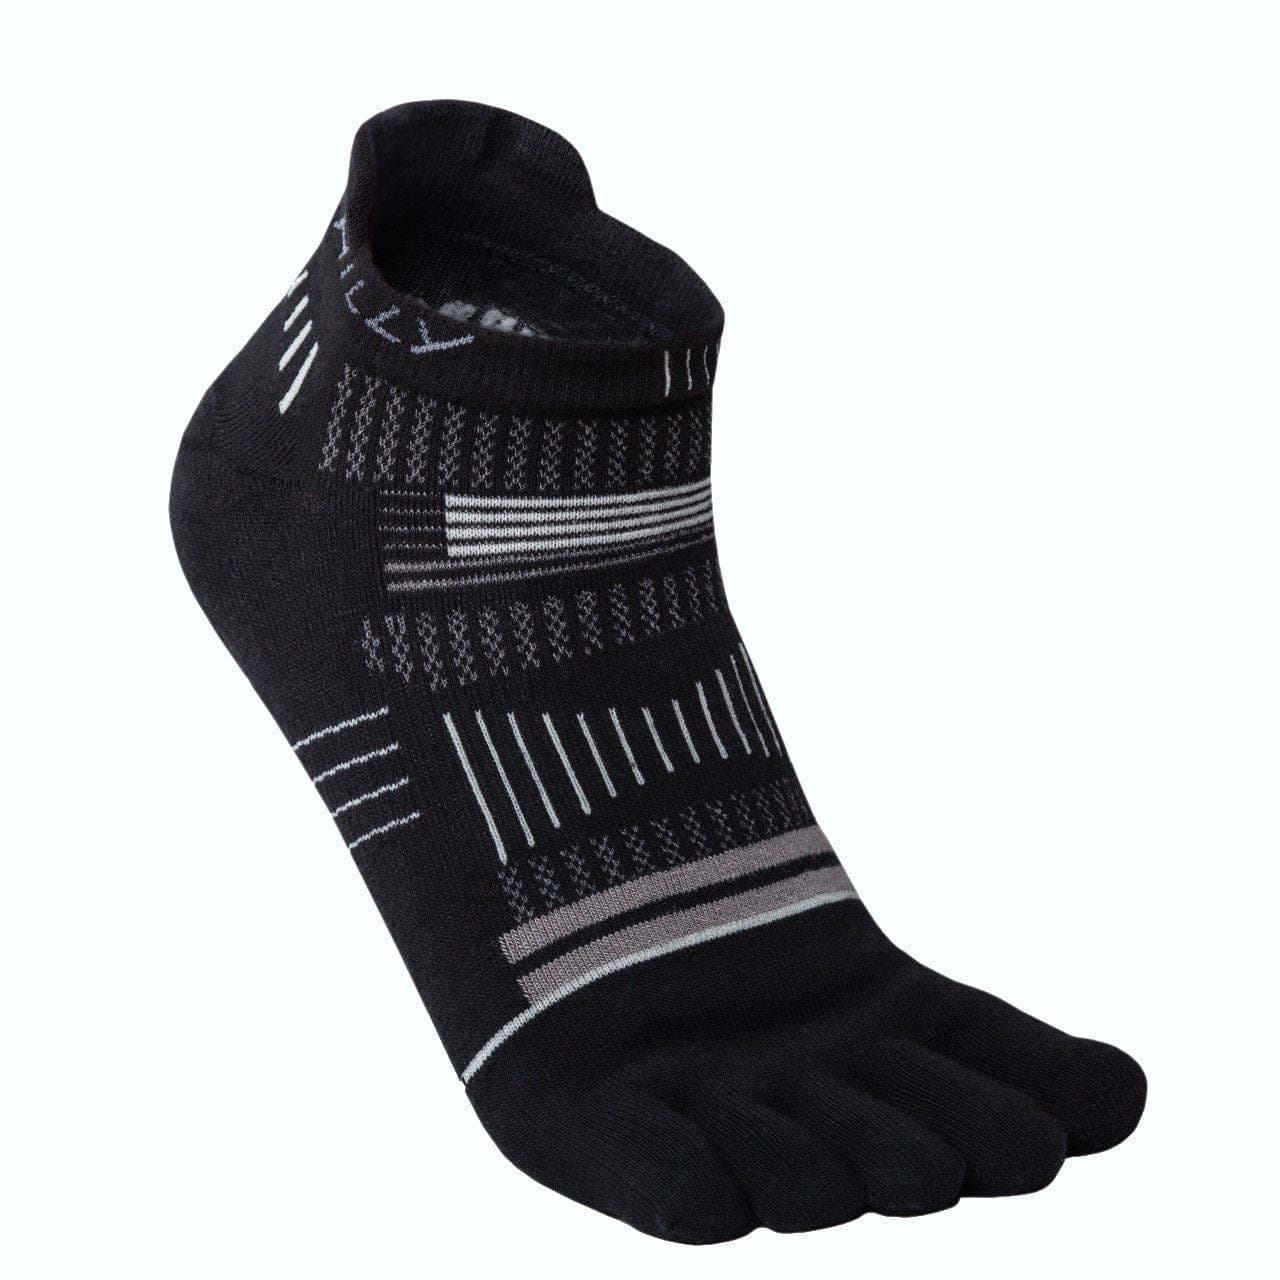 Hilly Toes Socklet Min -  Black/Grey/Light Grey